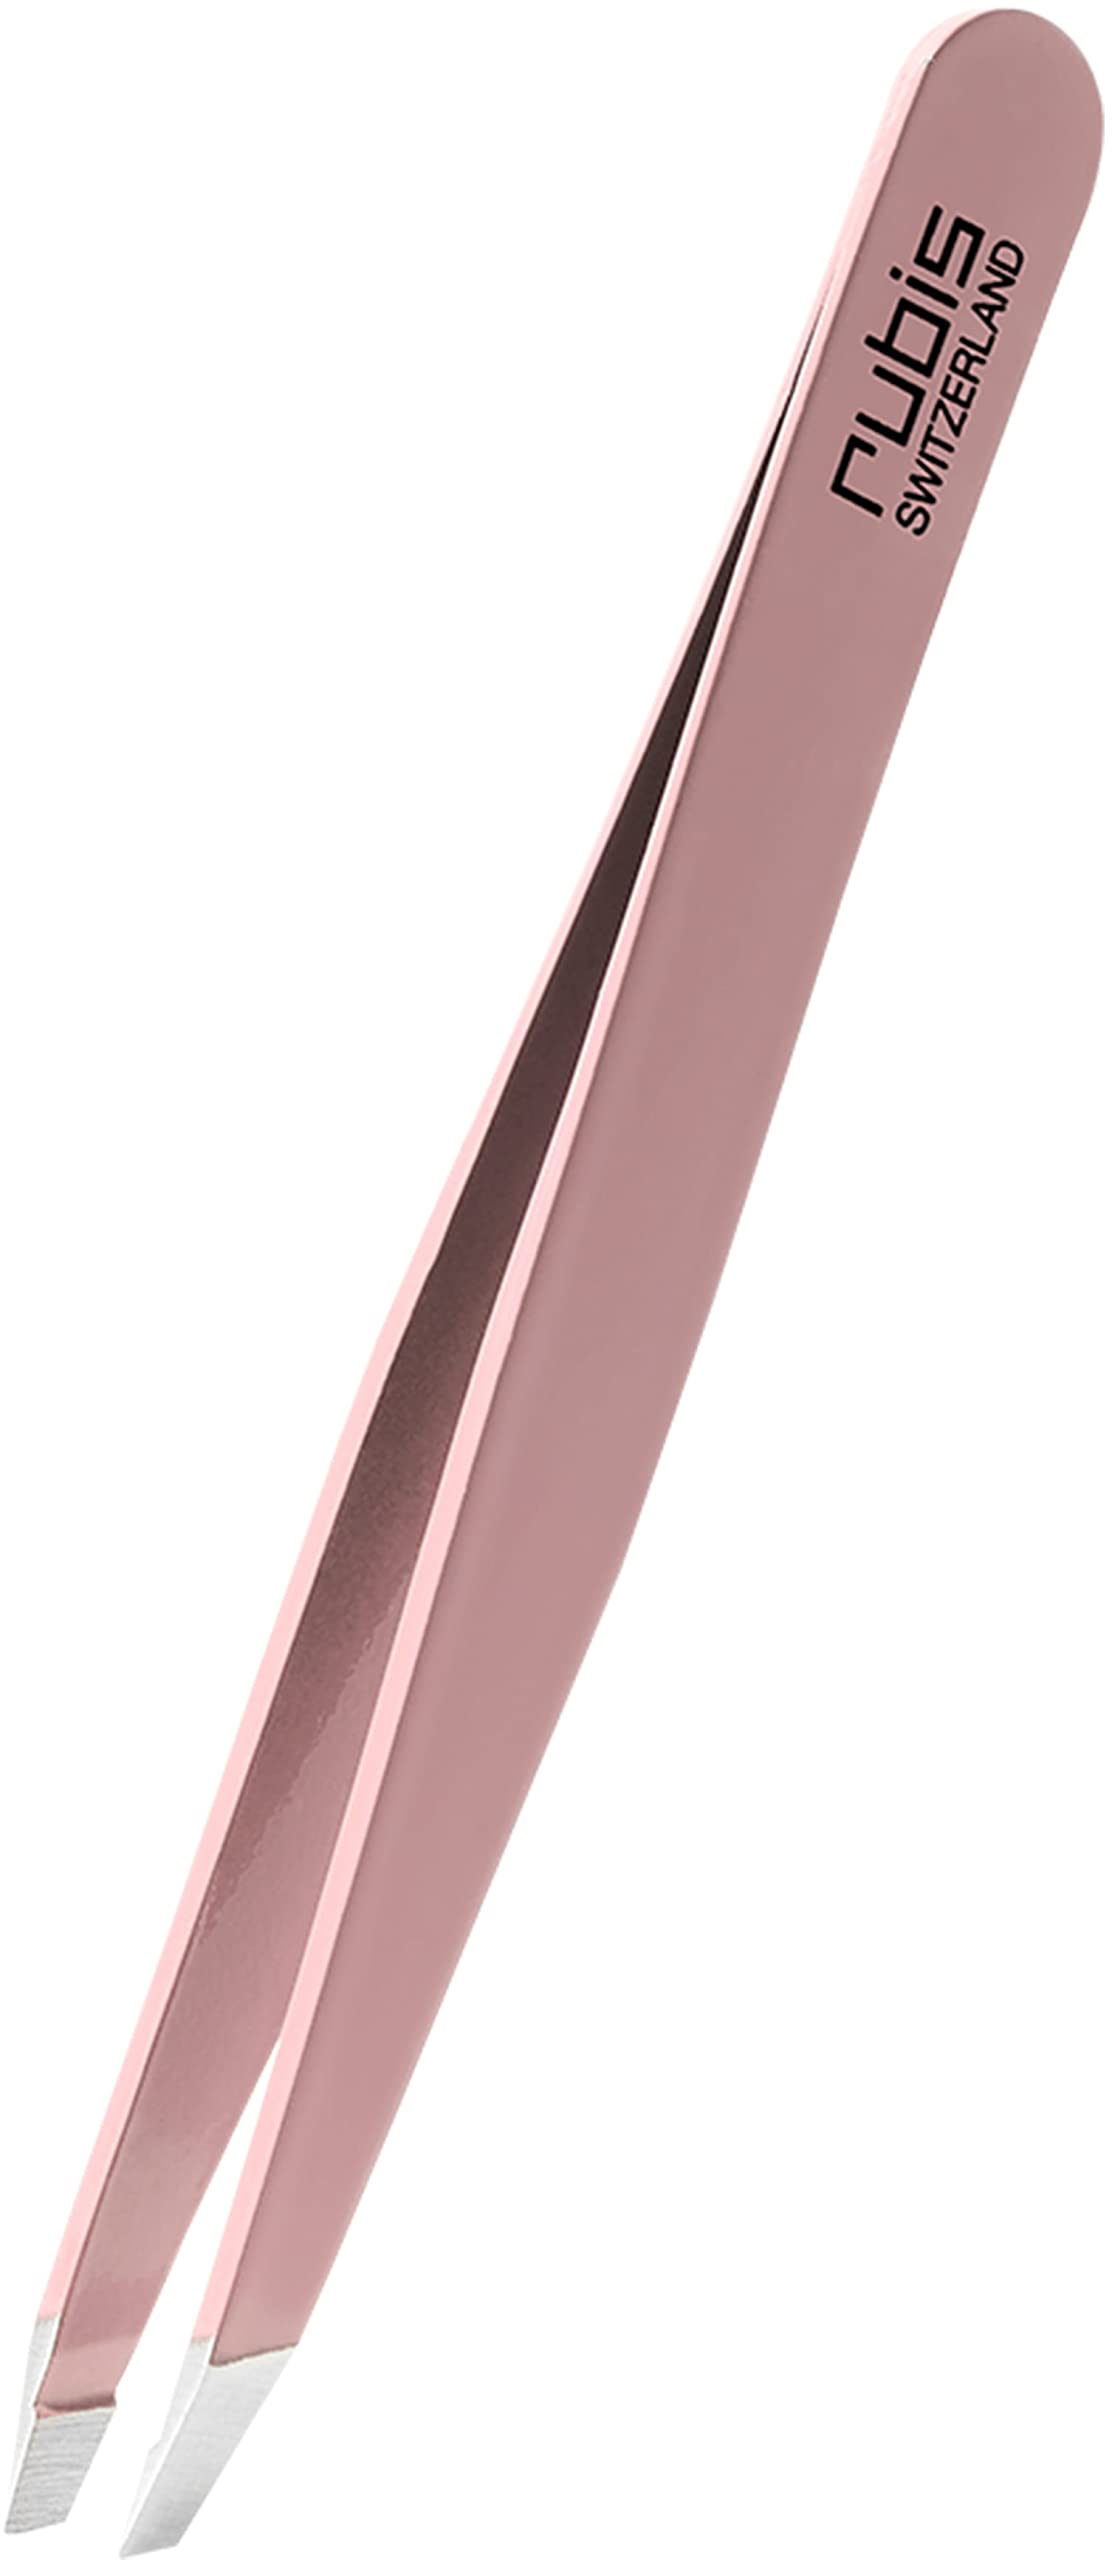 Rubis Pinzette Rosa - schräg, fein und spitz - Pinzette zum Augenbrauen zupfen - schräge Spitze zur Haarentfernung - Profi Pinzette